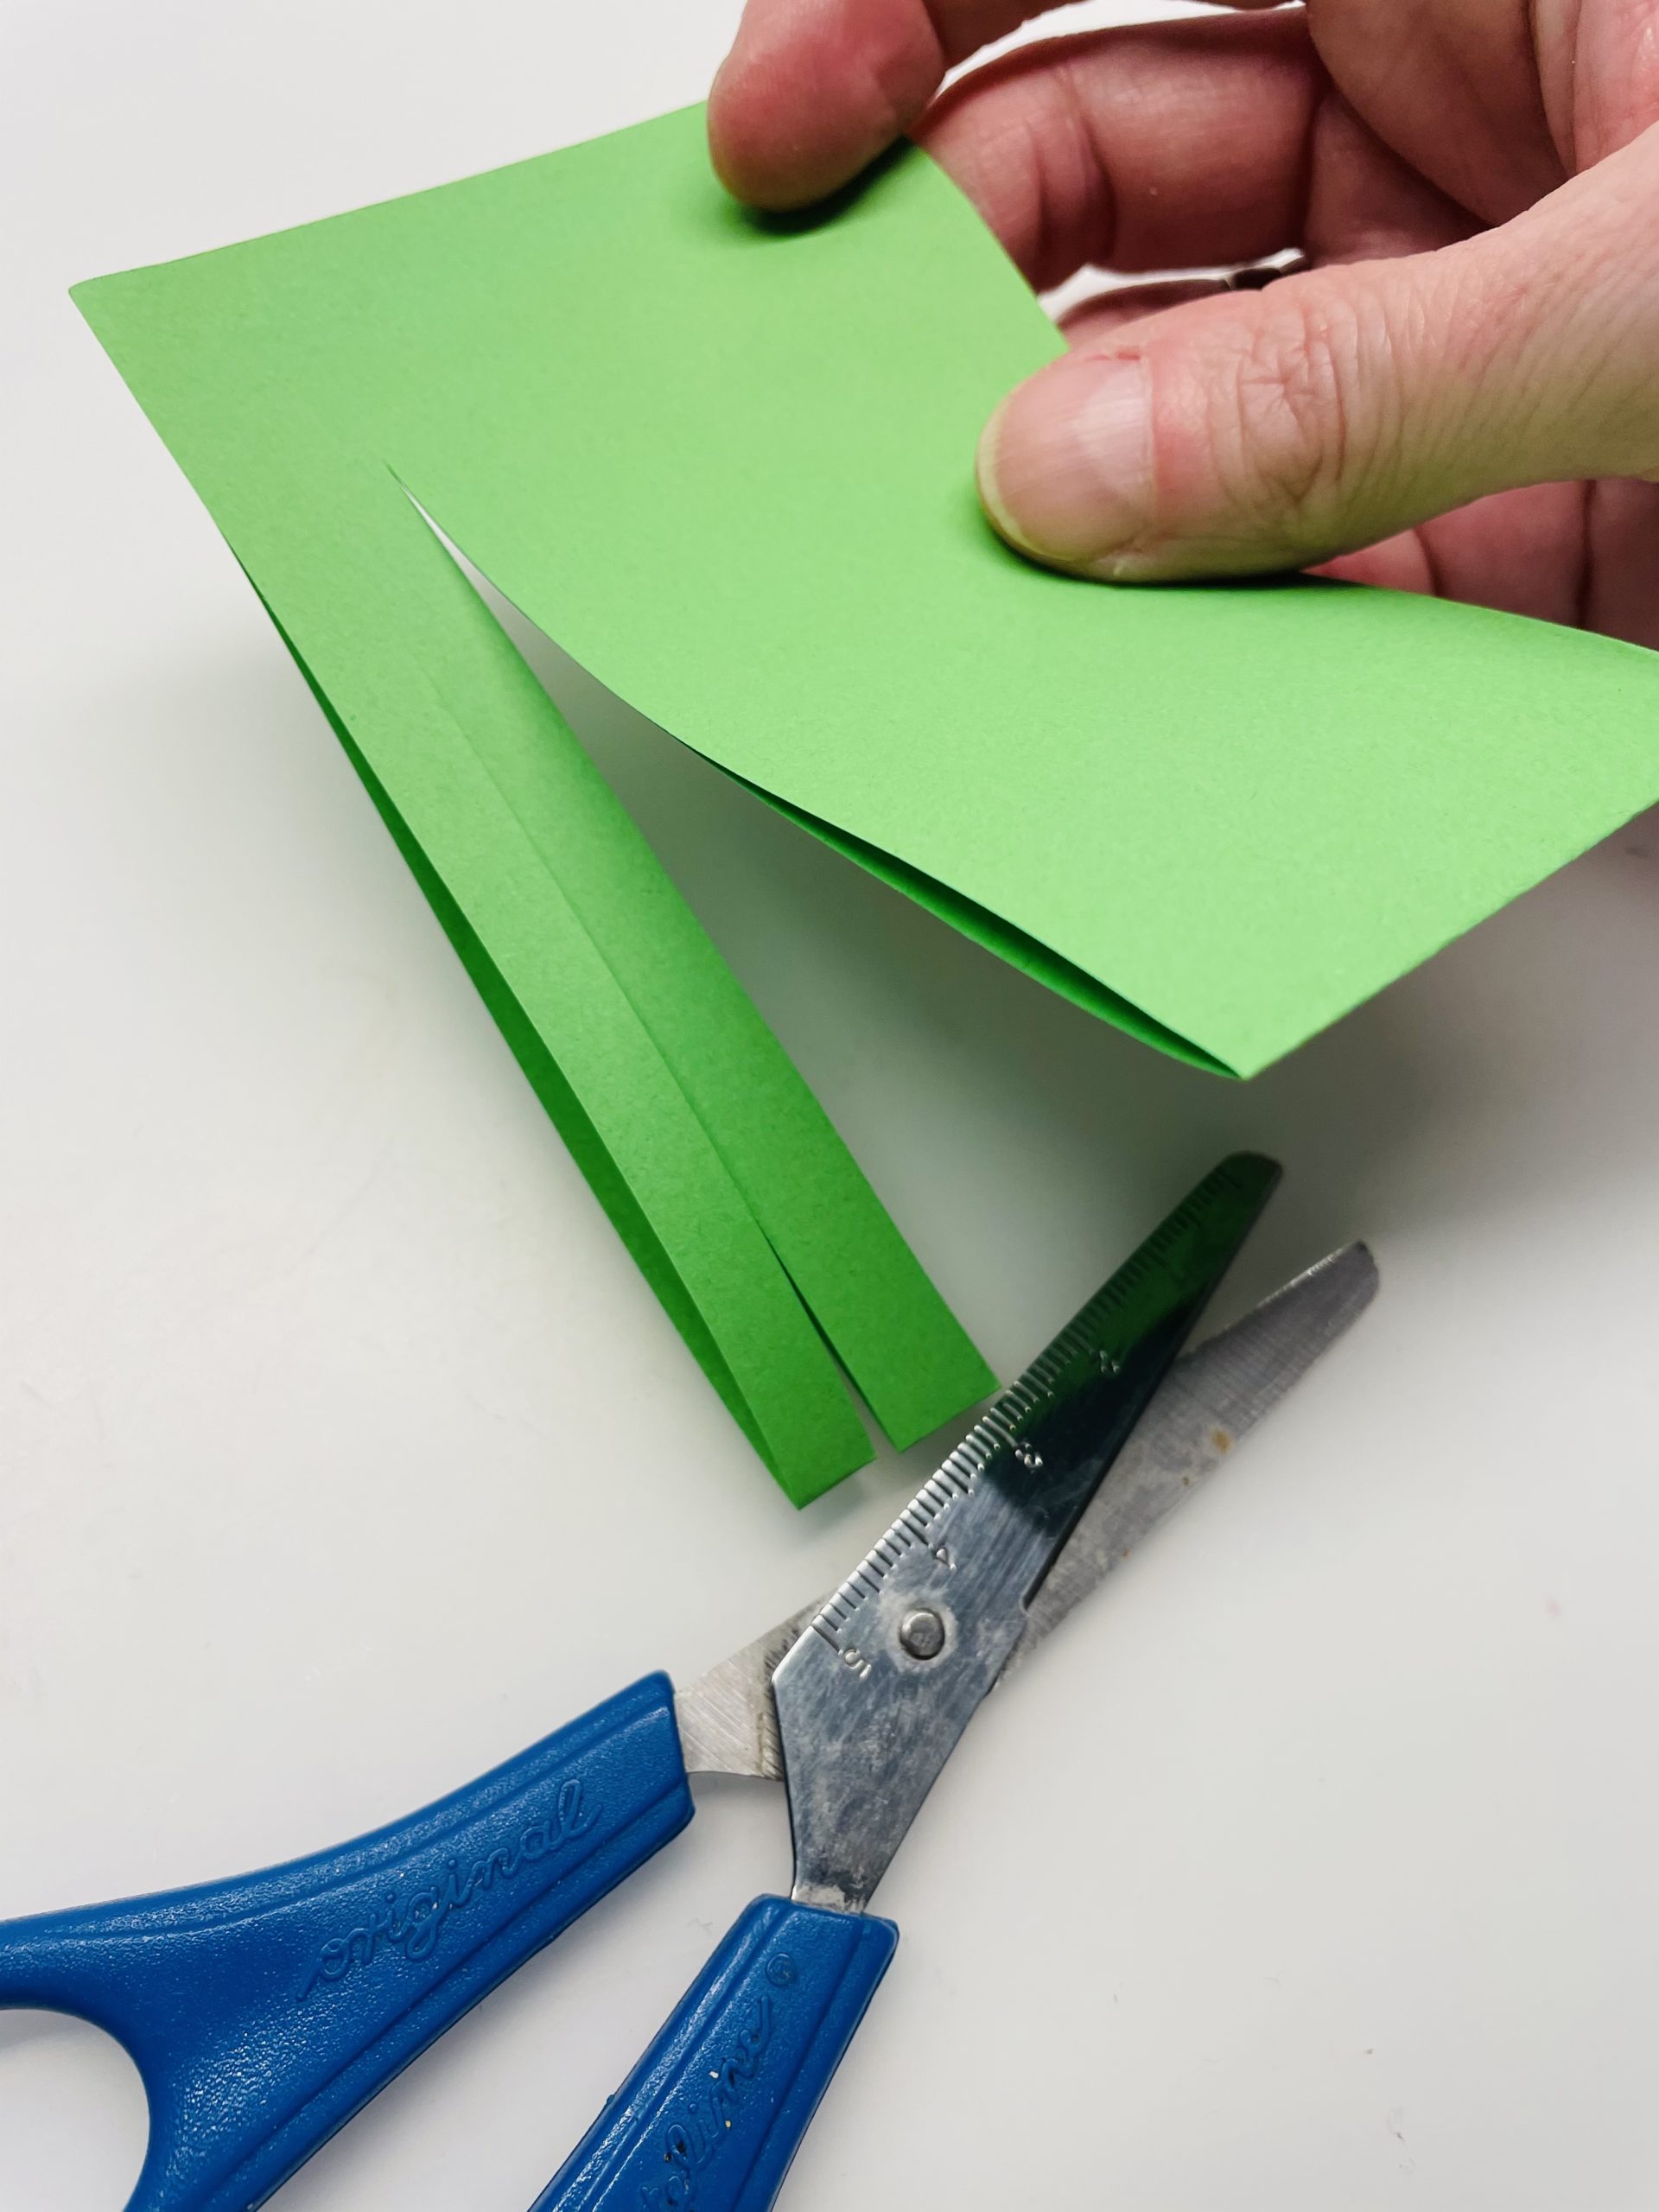 Bild zum Schritt 14 für die Kinder-Beschäftigung: 'Schneidet sehr schmale Streifen in das Papier und lasst einen...'